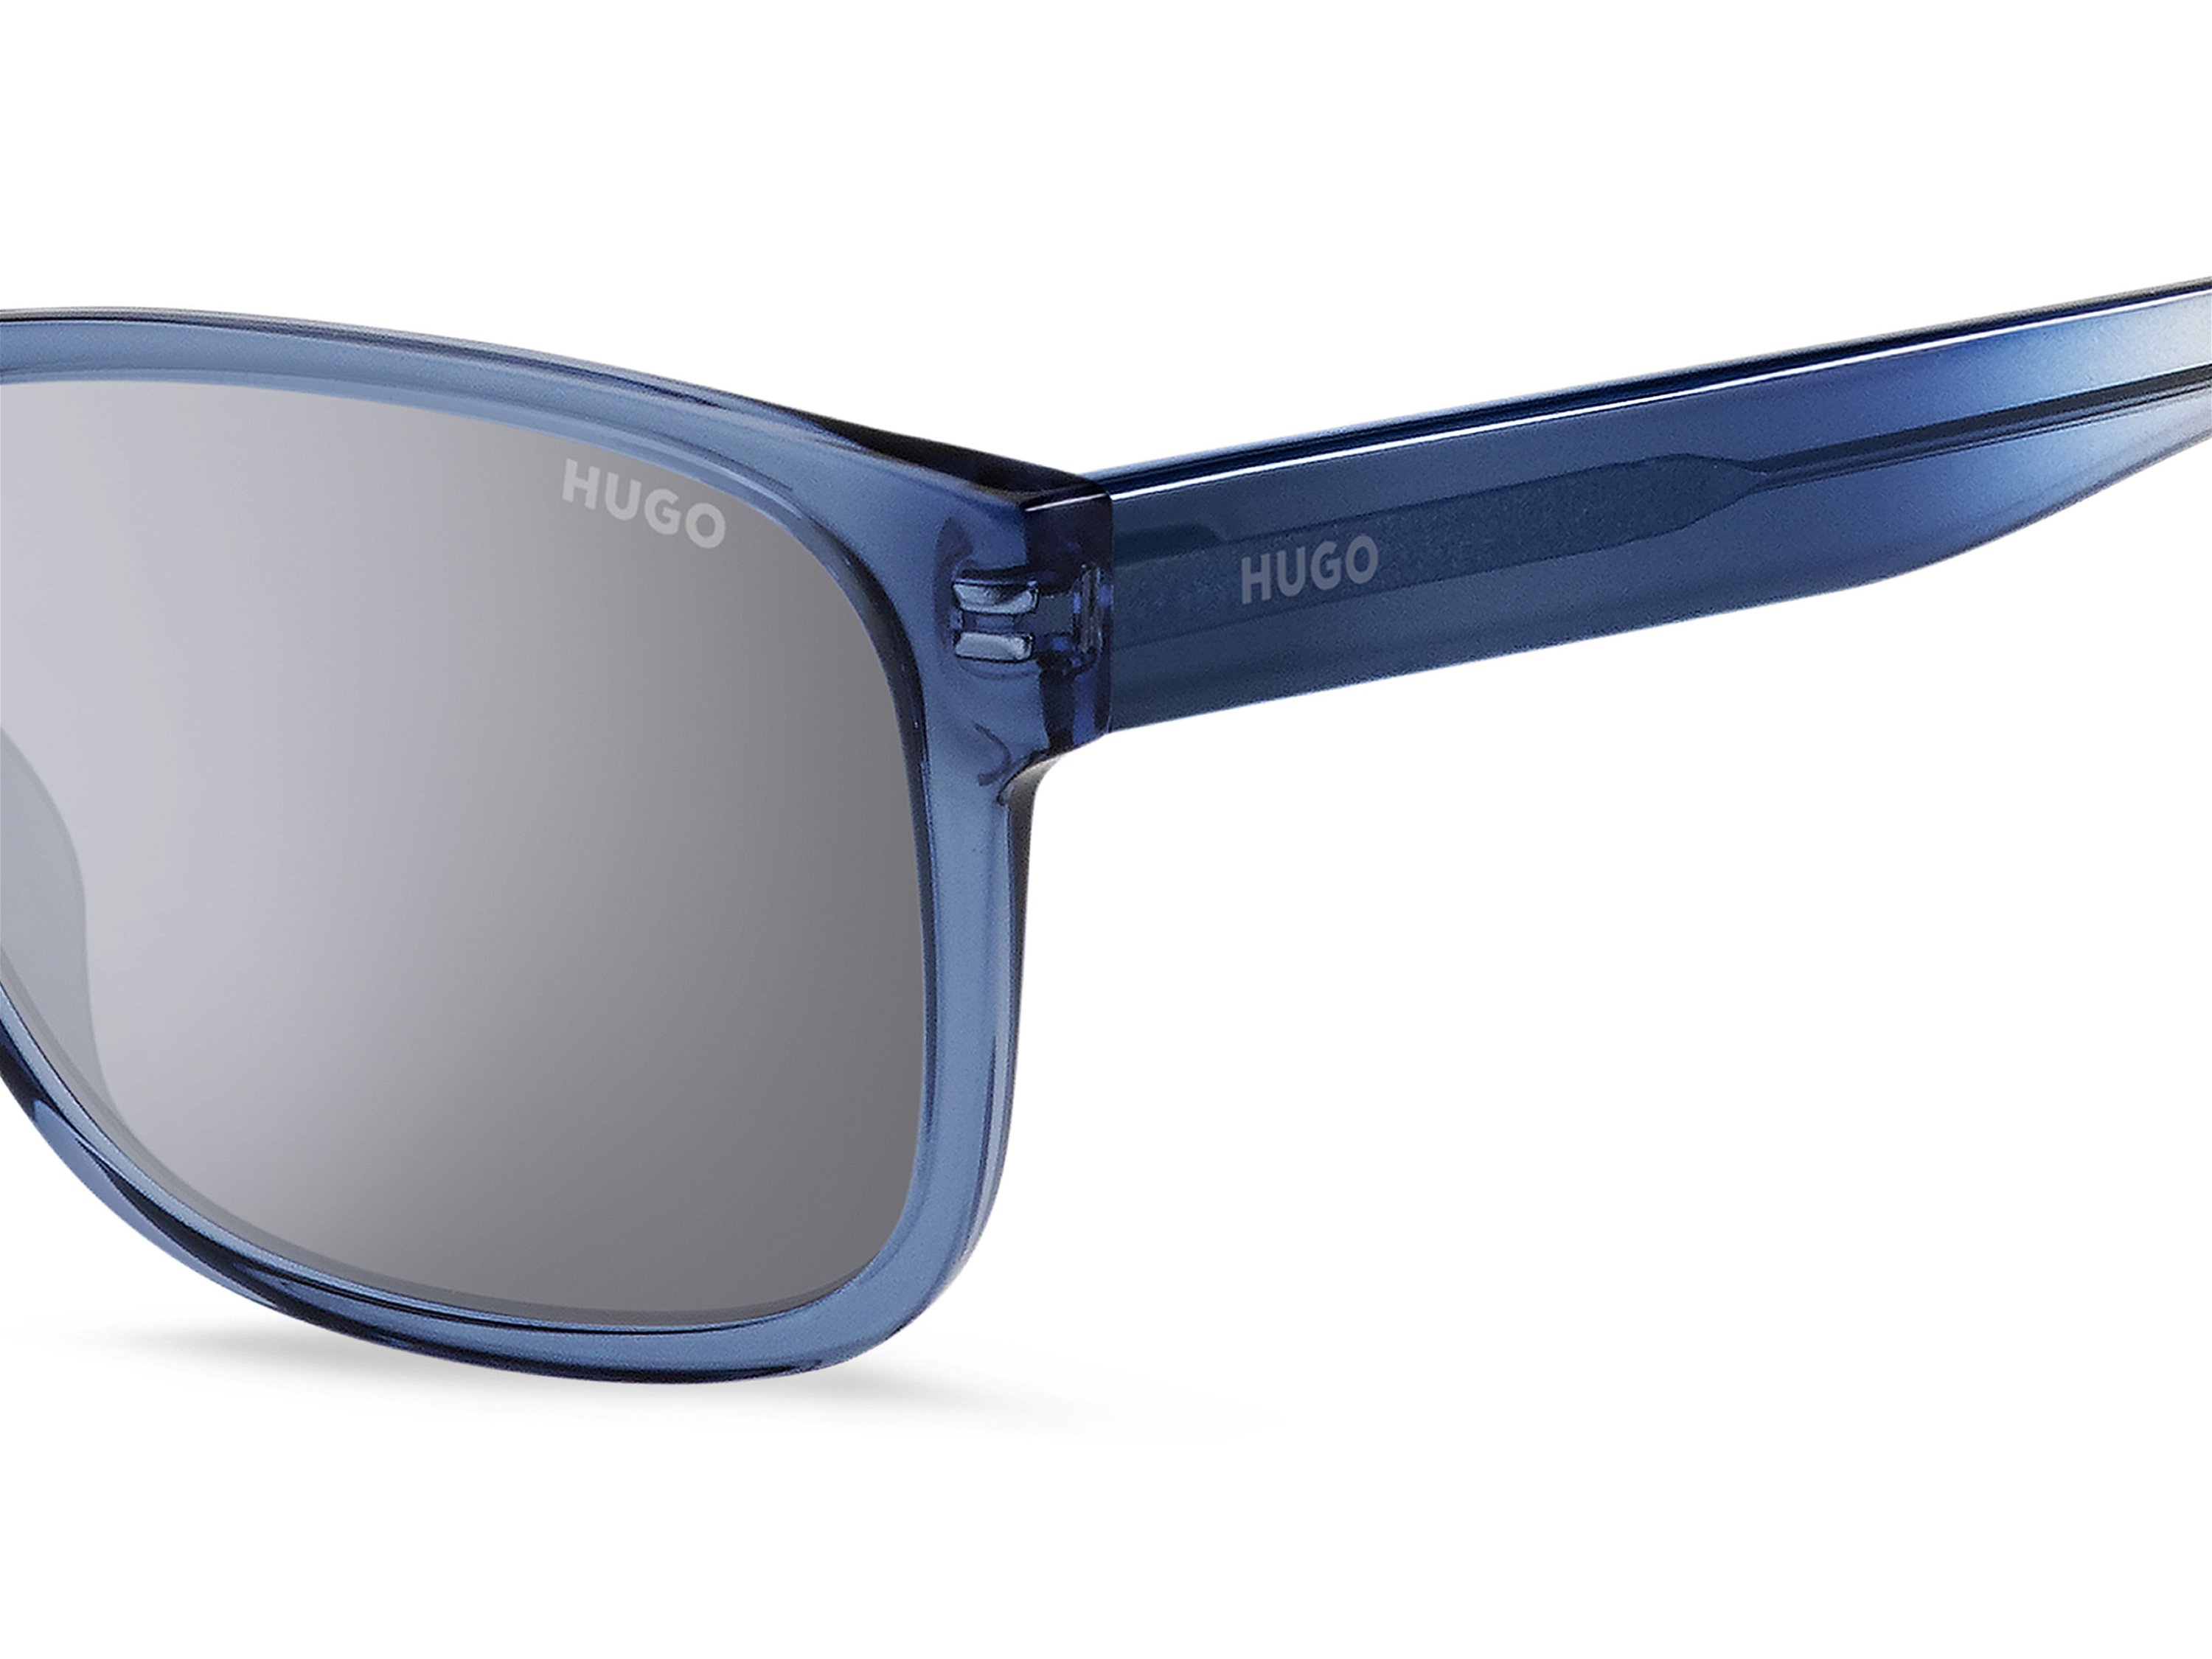 Das Bild zeigt die Sonnenbrille HG1260/S XW0 von der Marke Hugo in blau/grau.